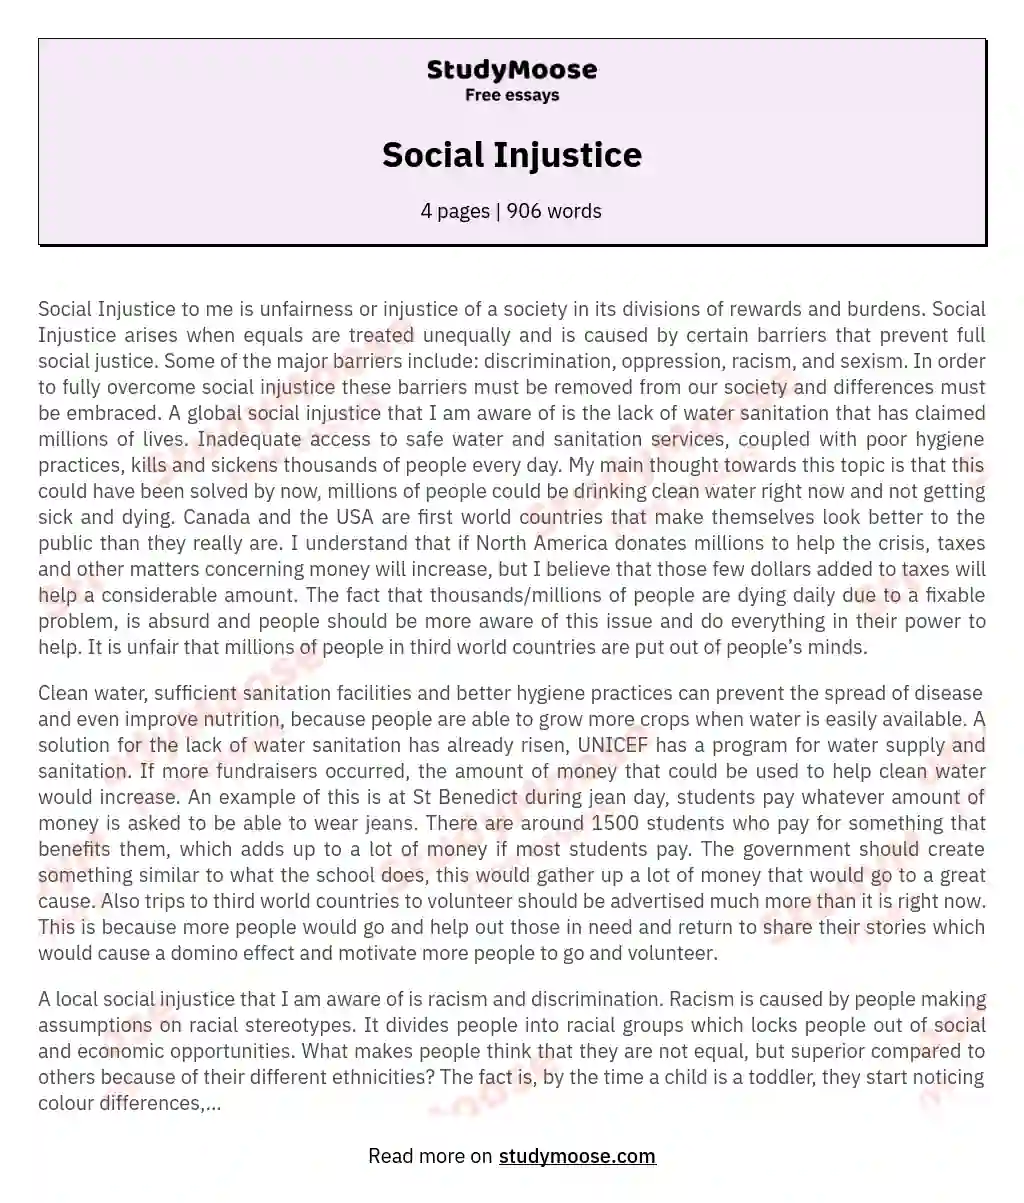 Social Injustice essay